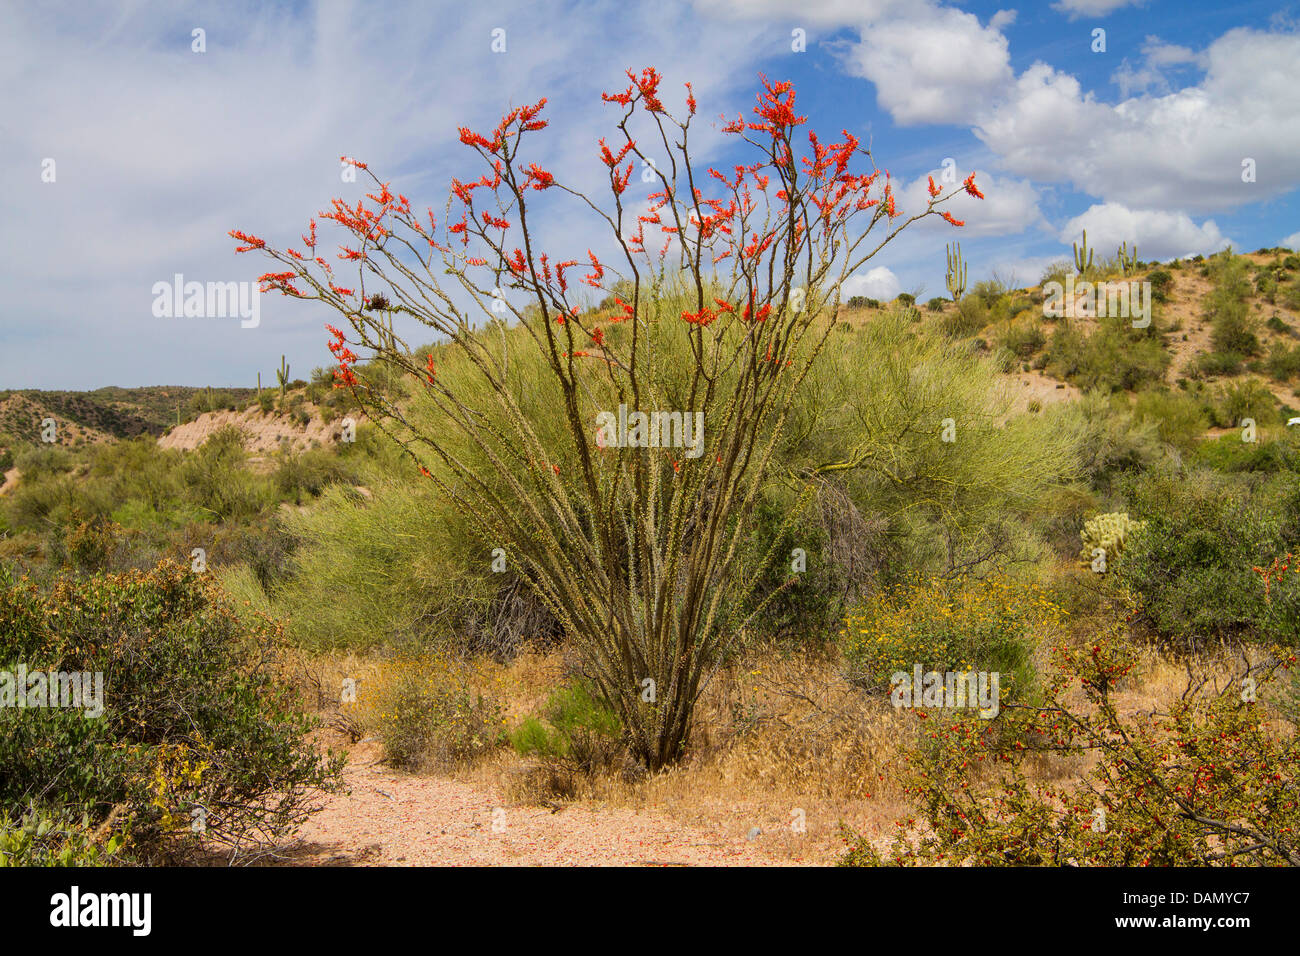 La société, Coachwhip, personnel de Jacob, Vigne (Cactus Fouquieria splendens), désert de Sonora, en Arizona, USA Banque D'Images